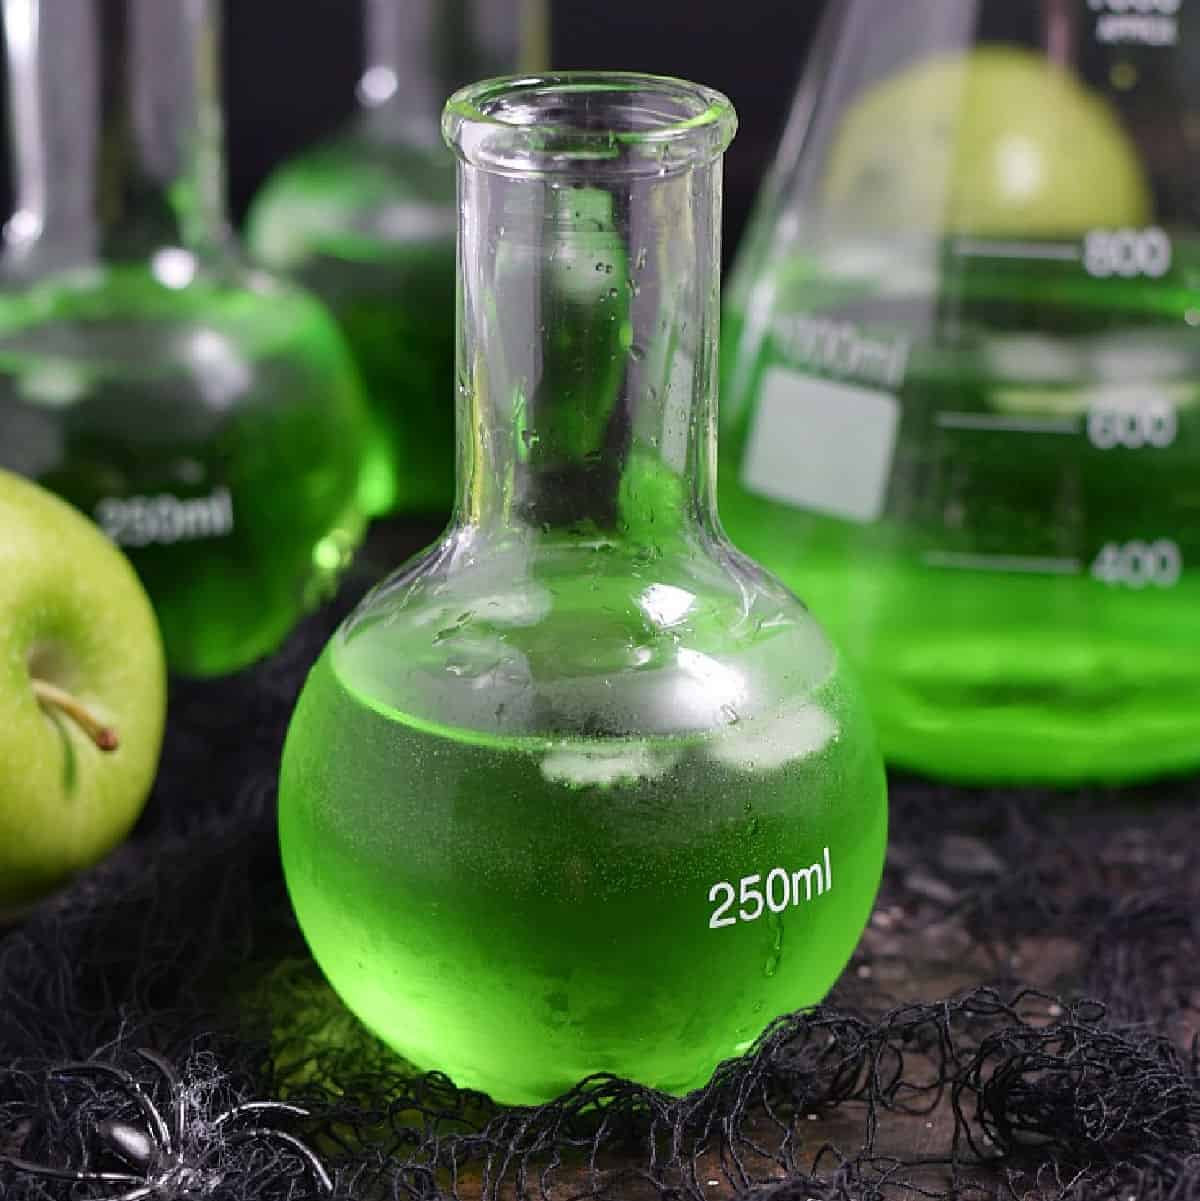 Poisoned Green Apple 